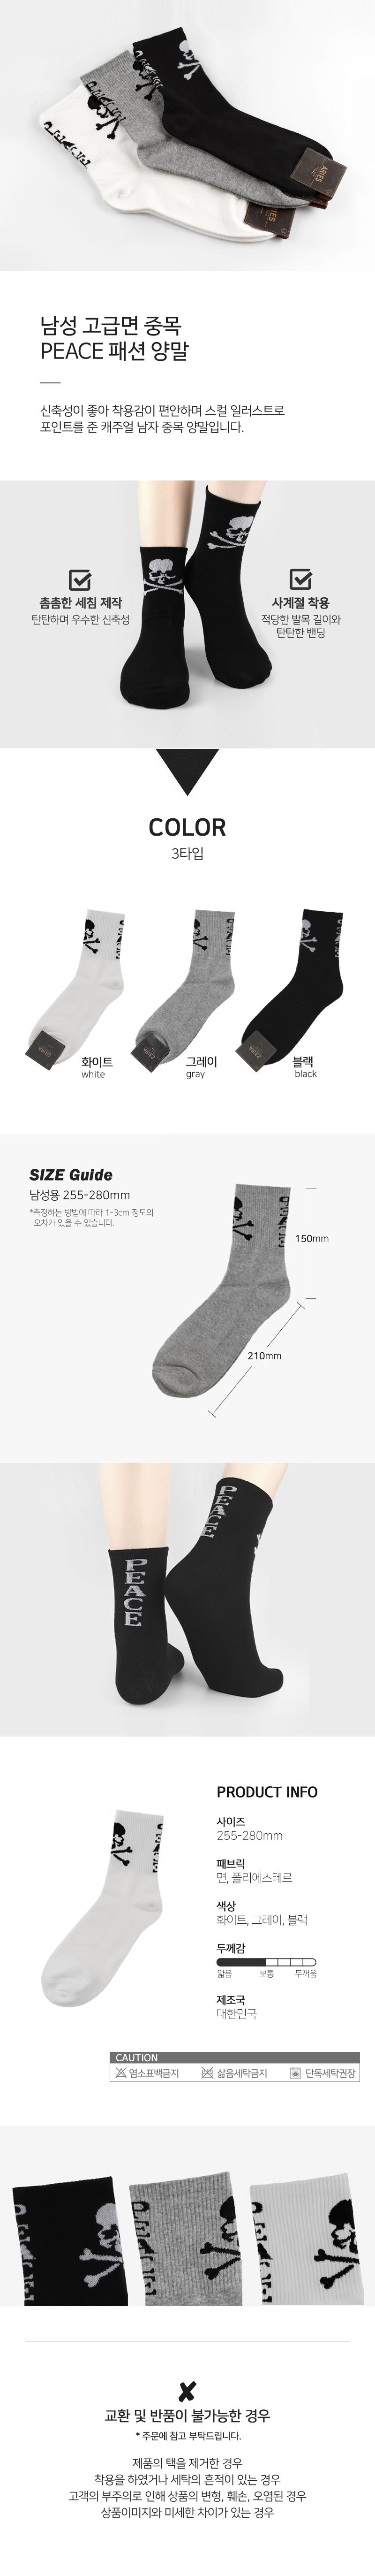 socks_00116.jpg